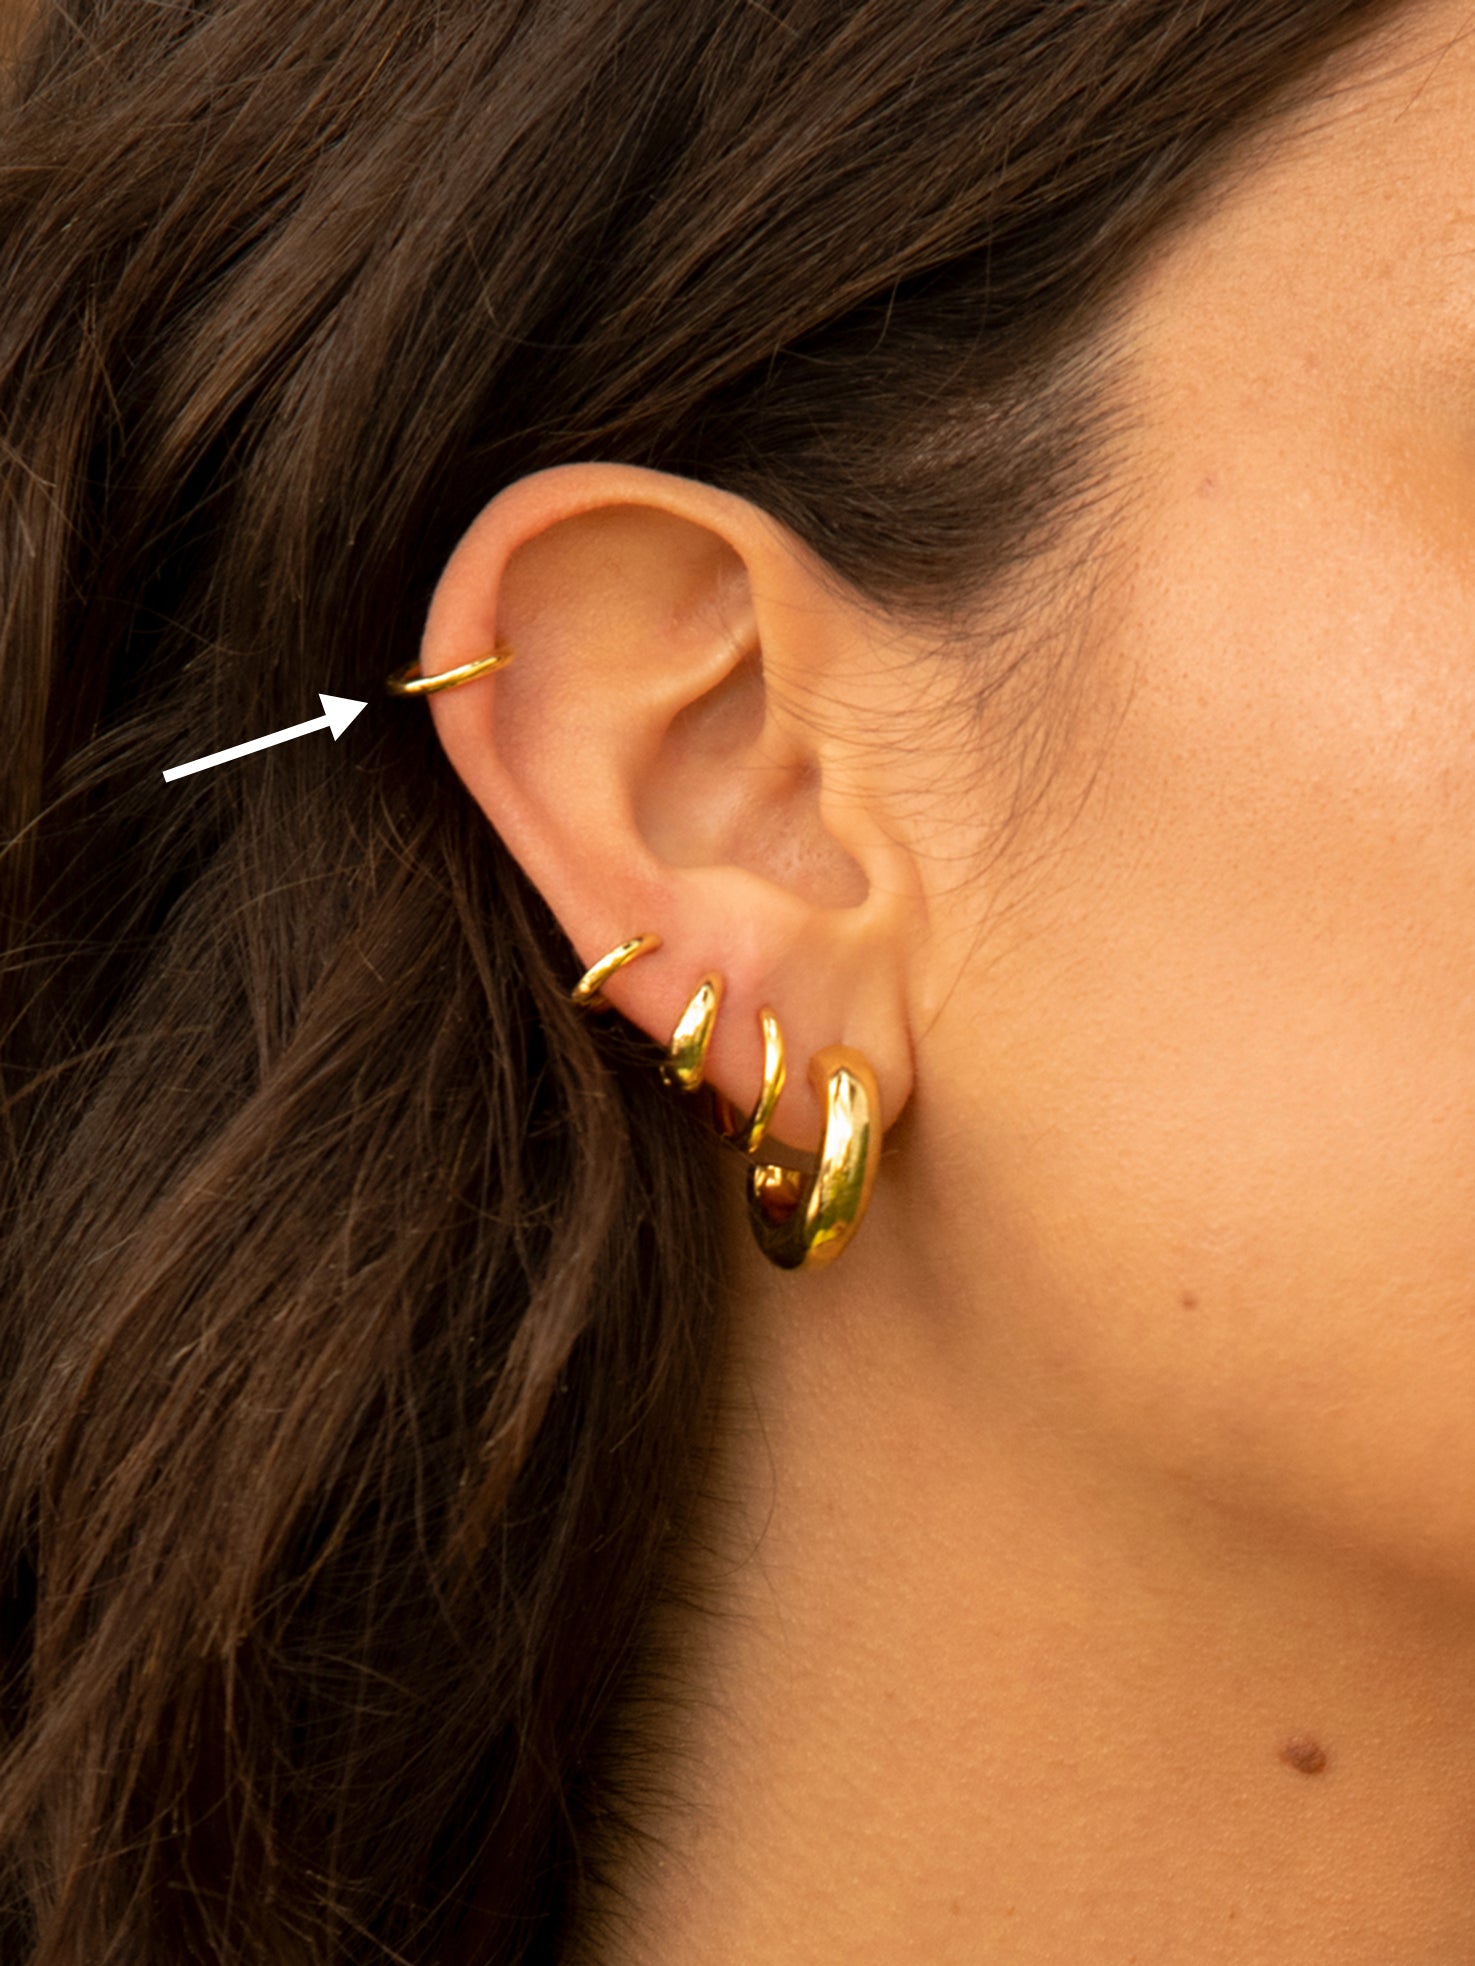 Gold Thin Ear Cuffs - Adjustable